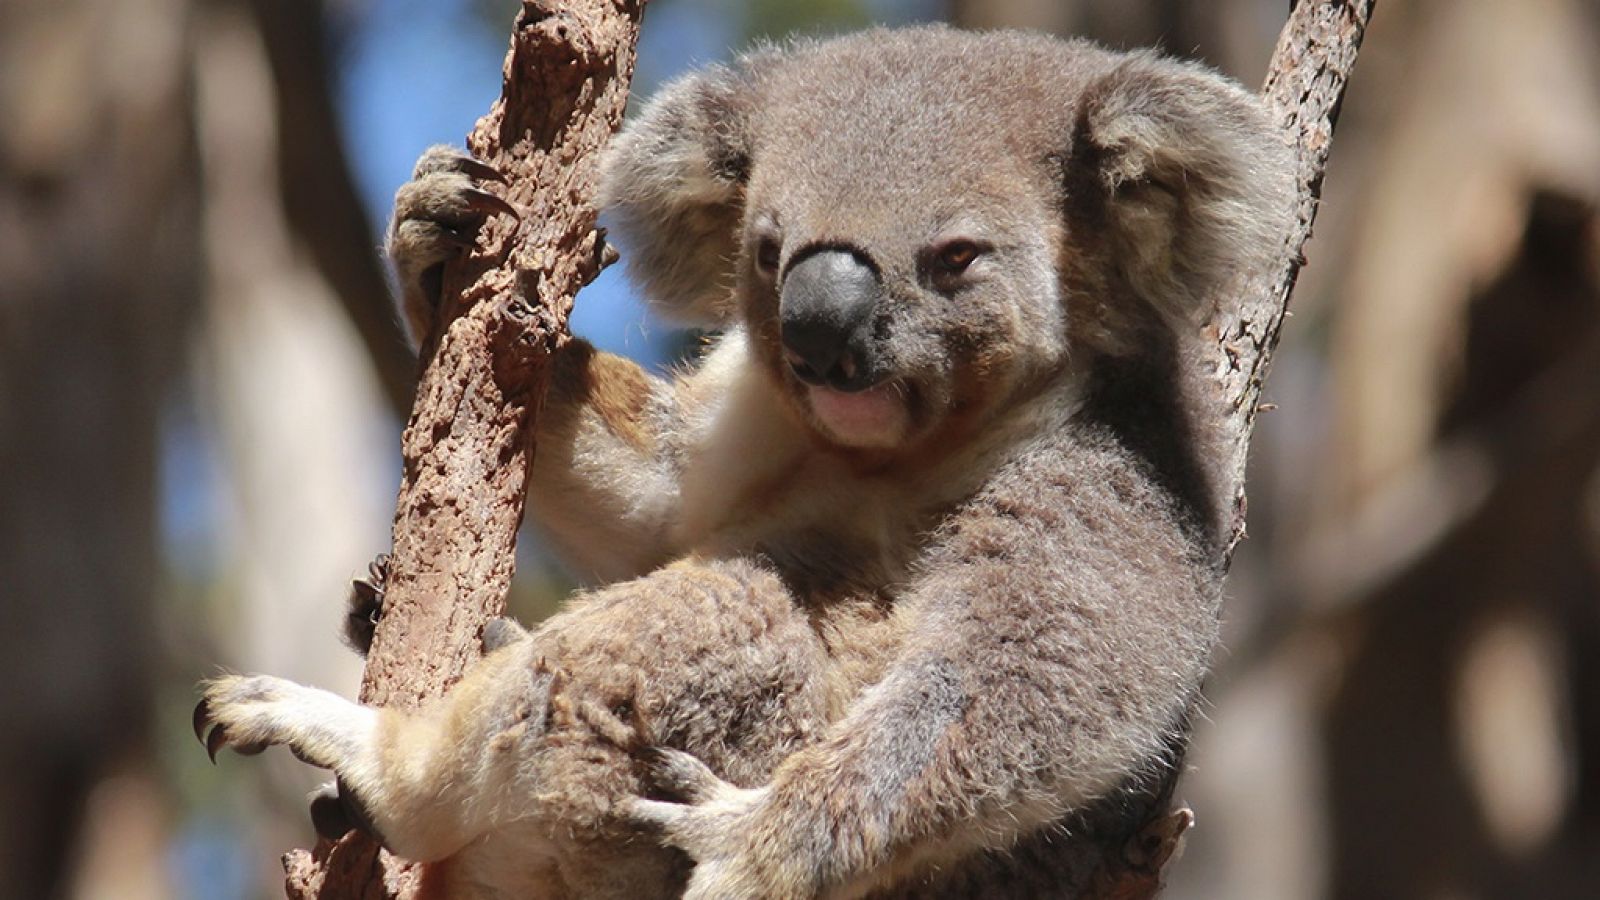 Grandes documentales - Australia salvaje: El bosque de los koalas